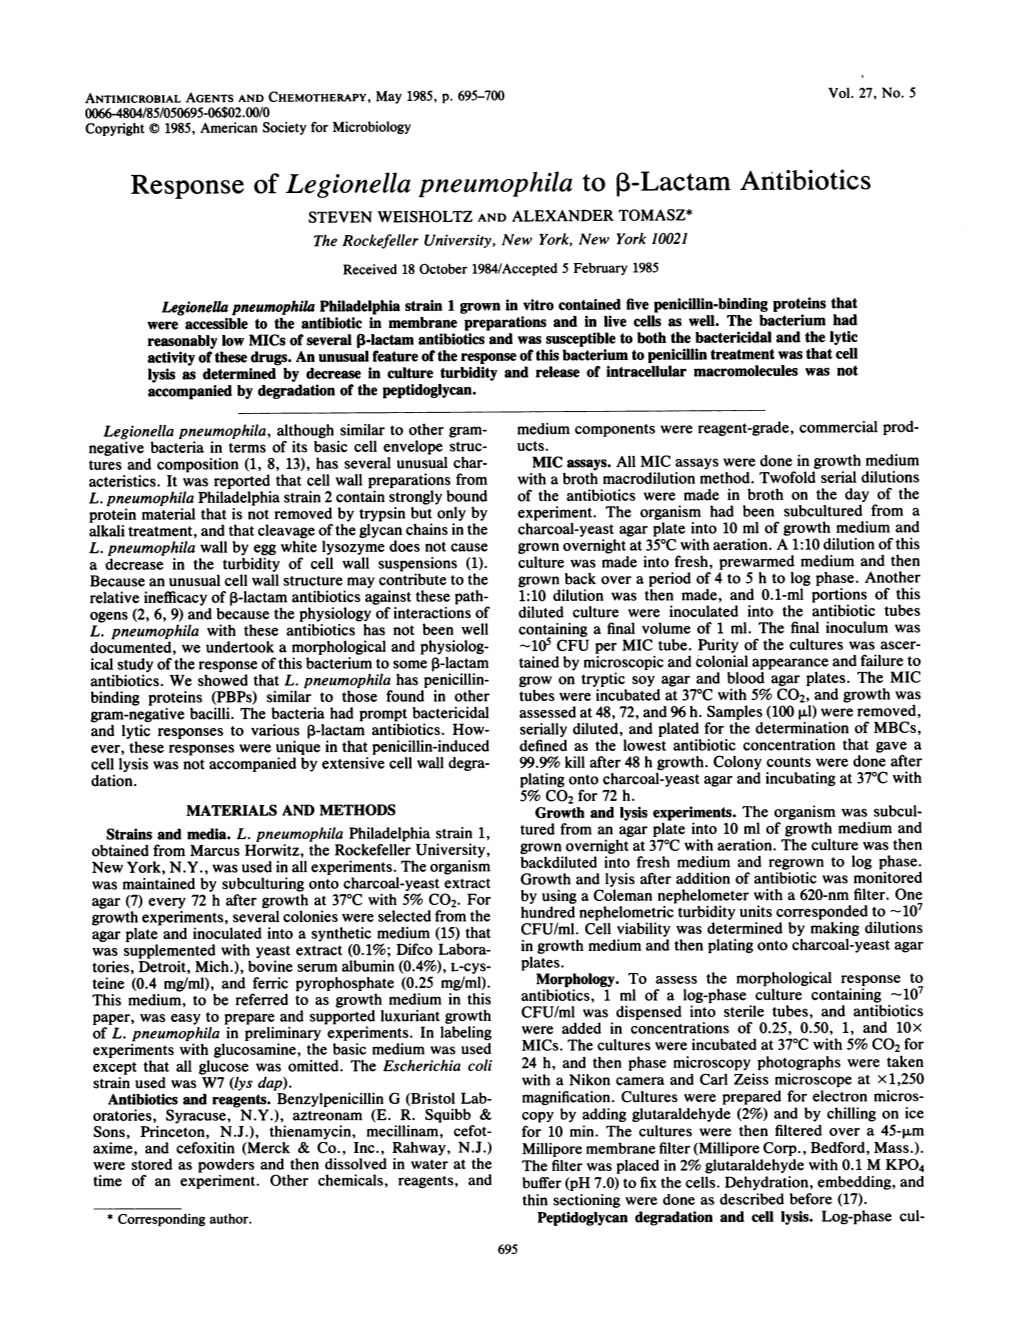 Response of Legionella Pneumophila to ,B-Lactam Antibiotics